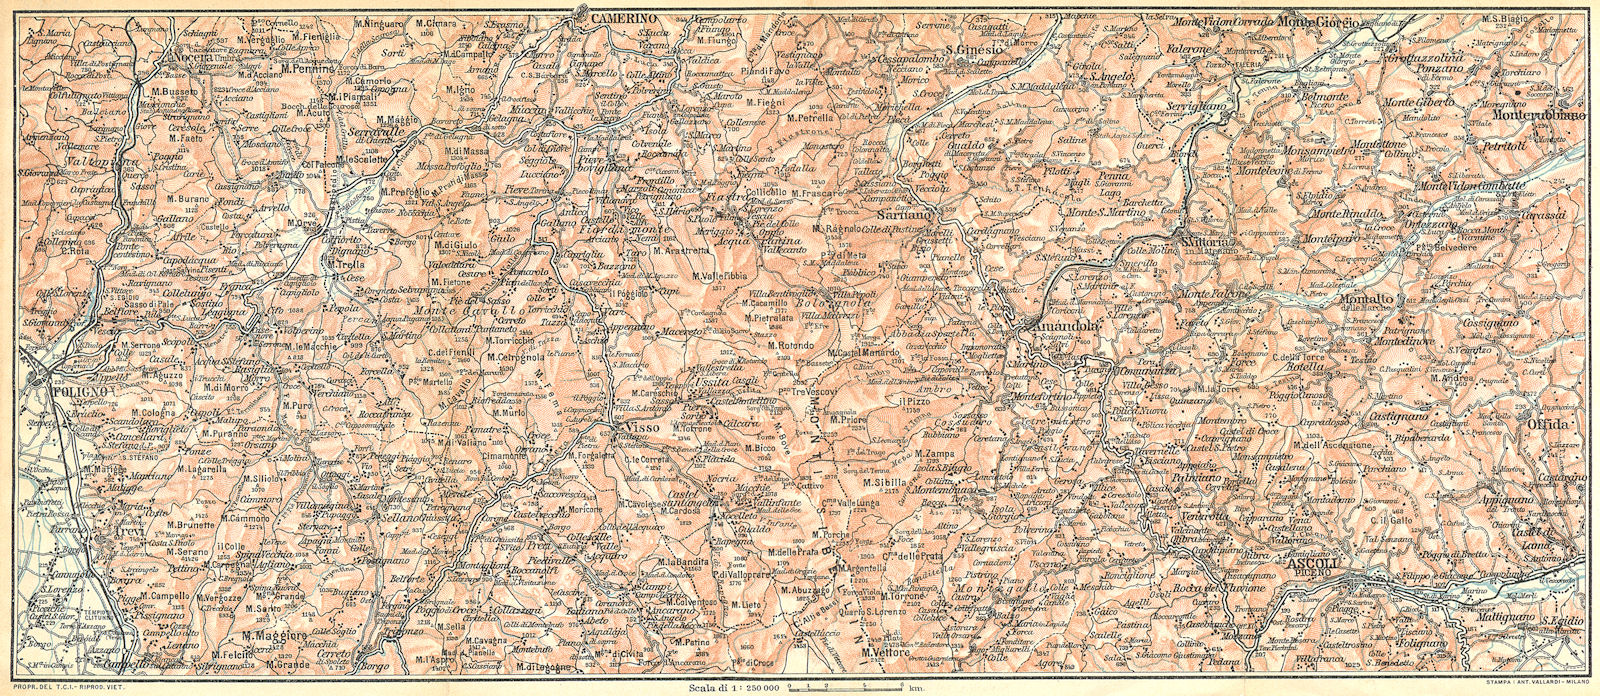 ITALY. L'Appennino tra Foligno, Camerino ed Ascoli(I Monti Sibillini) 1924 map